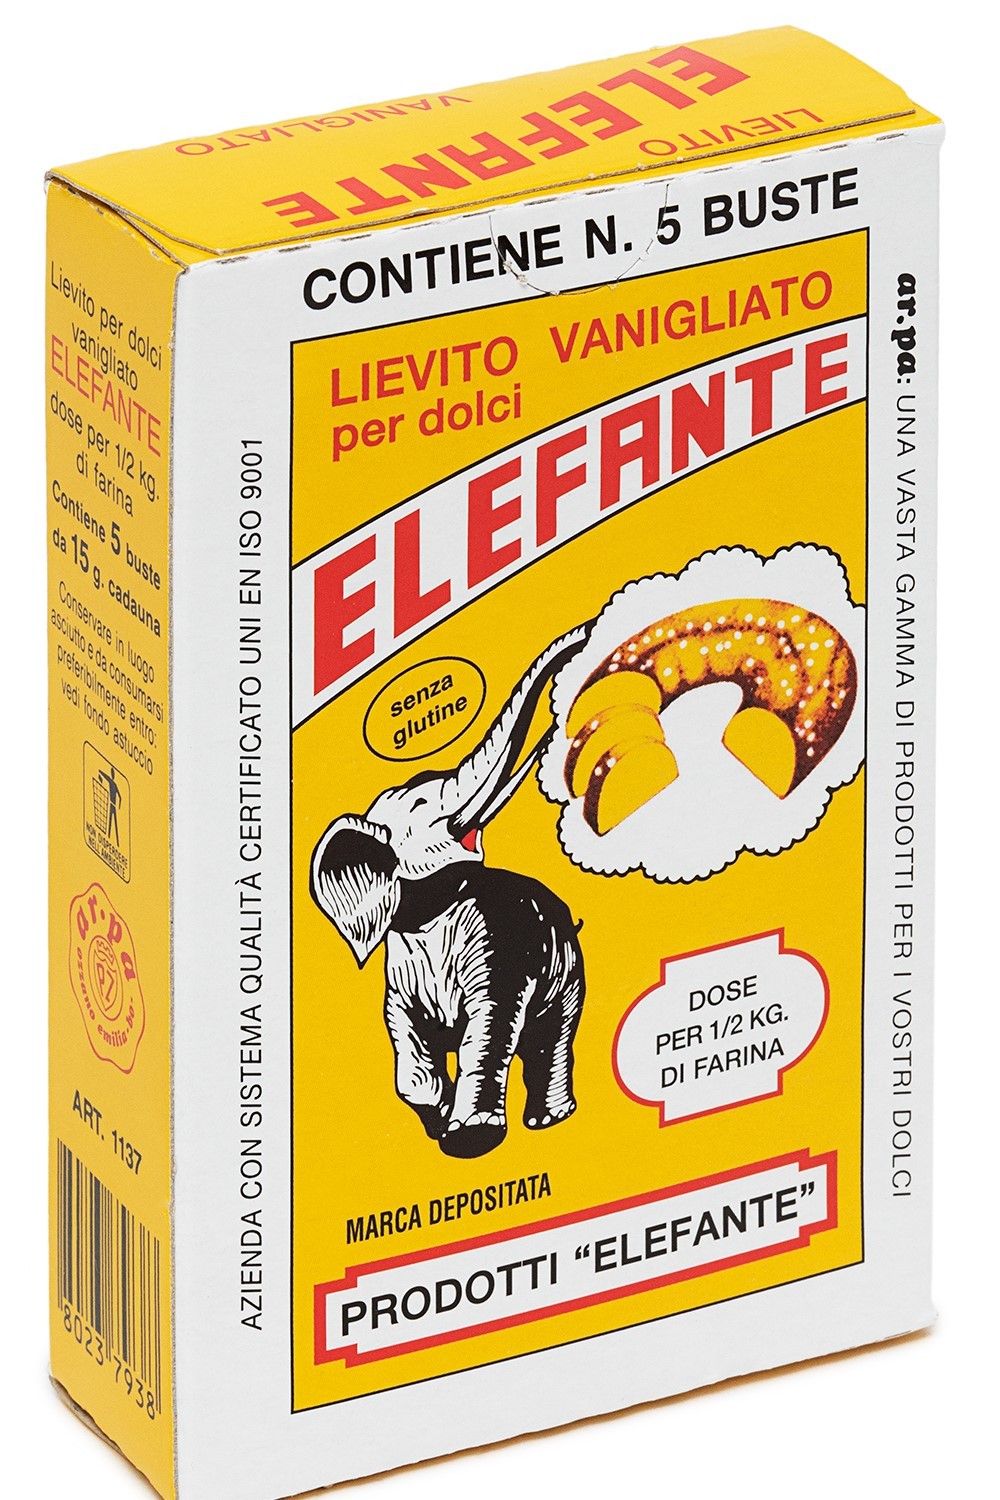 Ar.pa presenta il Lievito vanigliato elefante gluten free